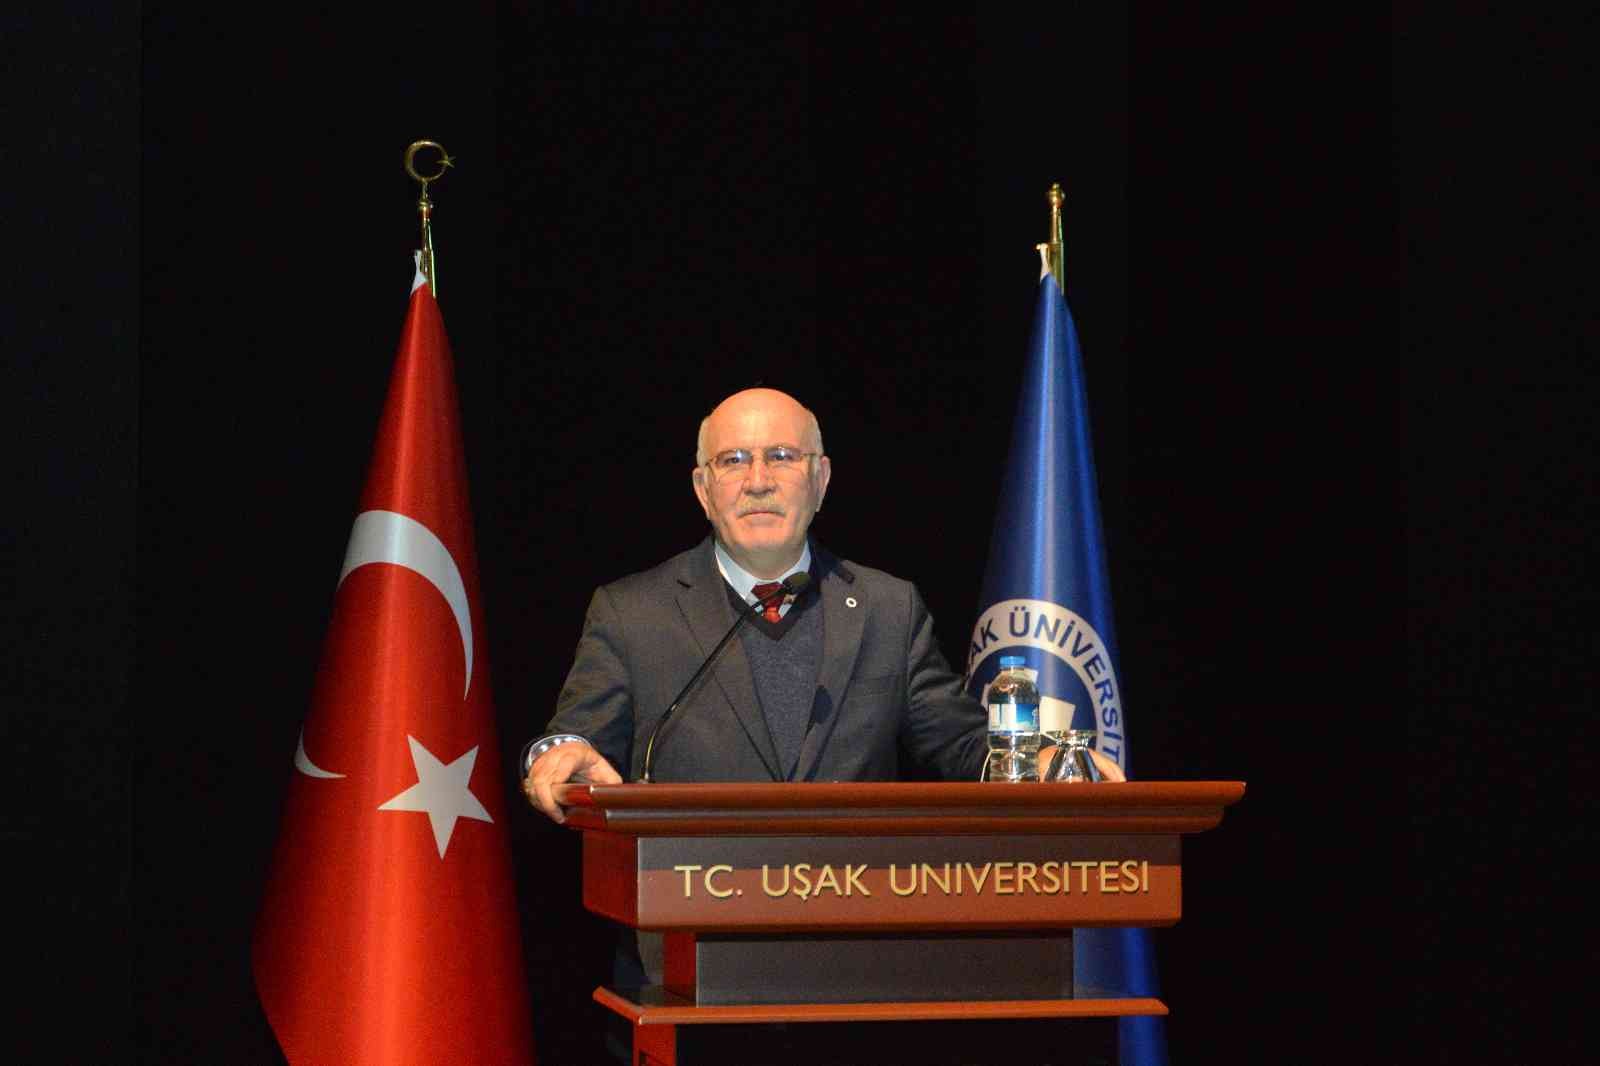 Uşak Üniversitesi’nde hedef ’YÖKAK’ kalite belgesi #usak